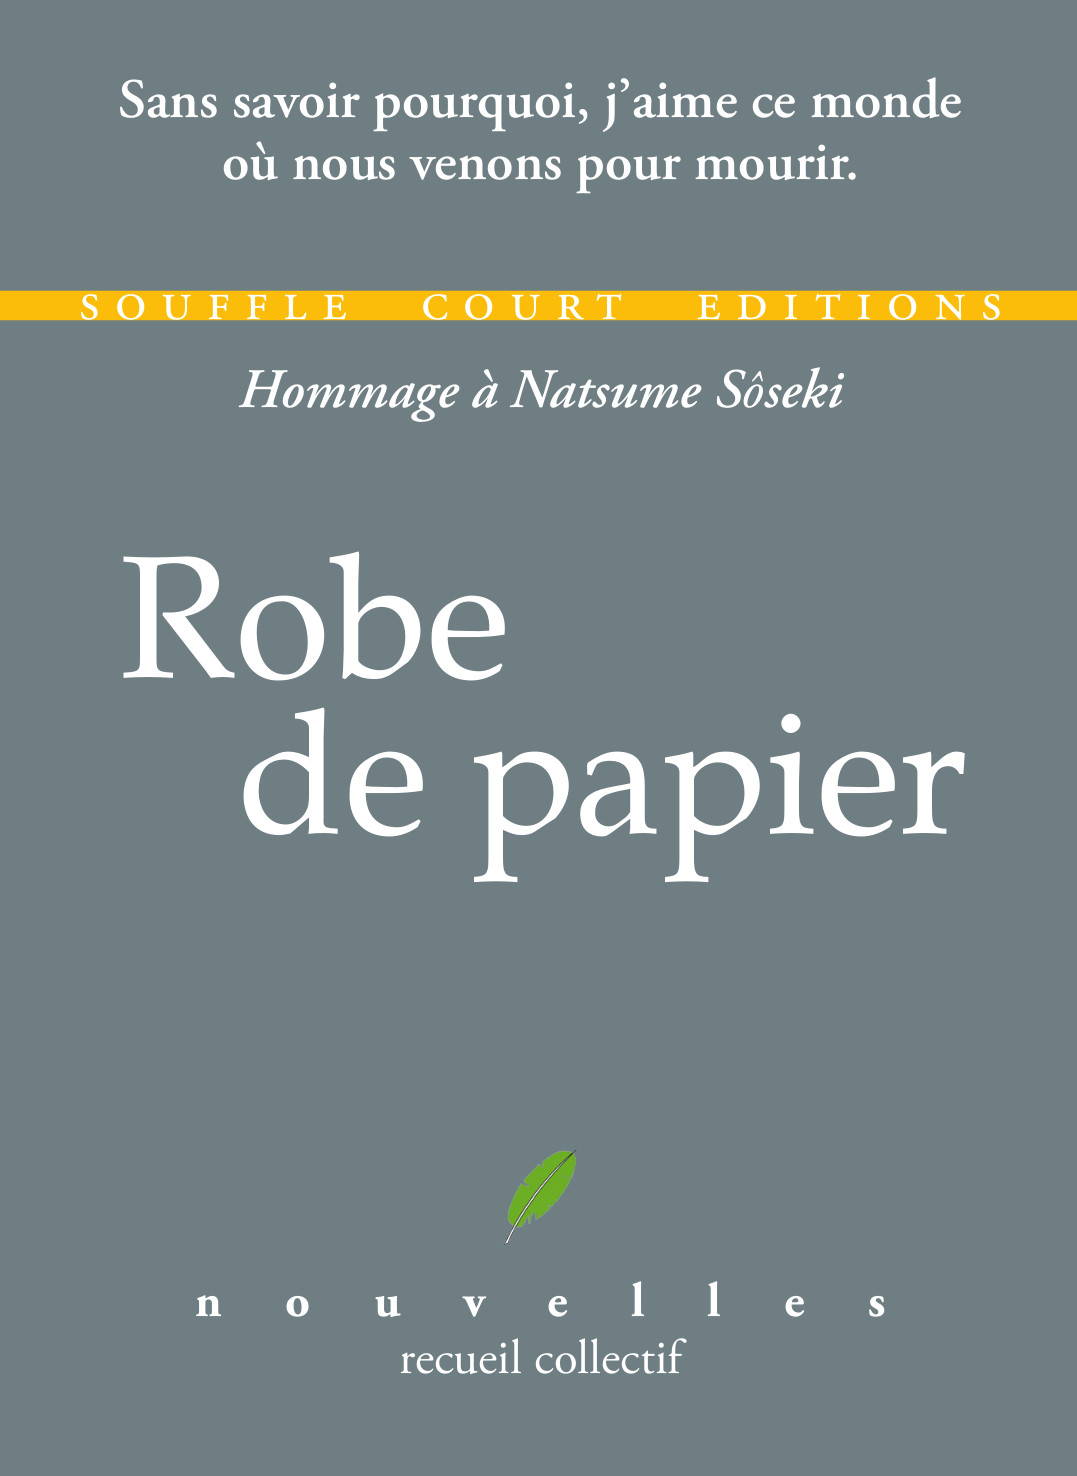 Robe-de-papier_couv_EP4.jpg